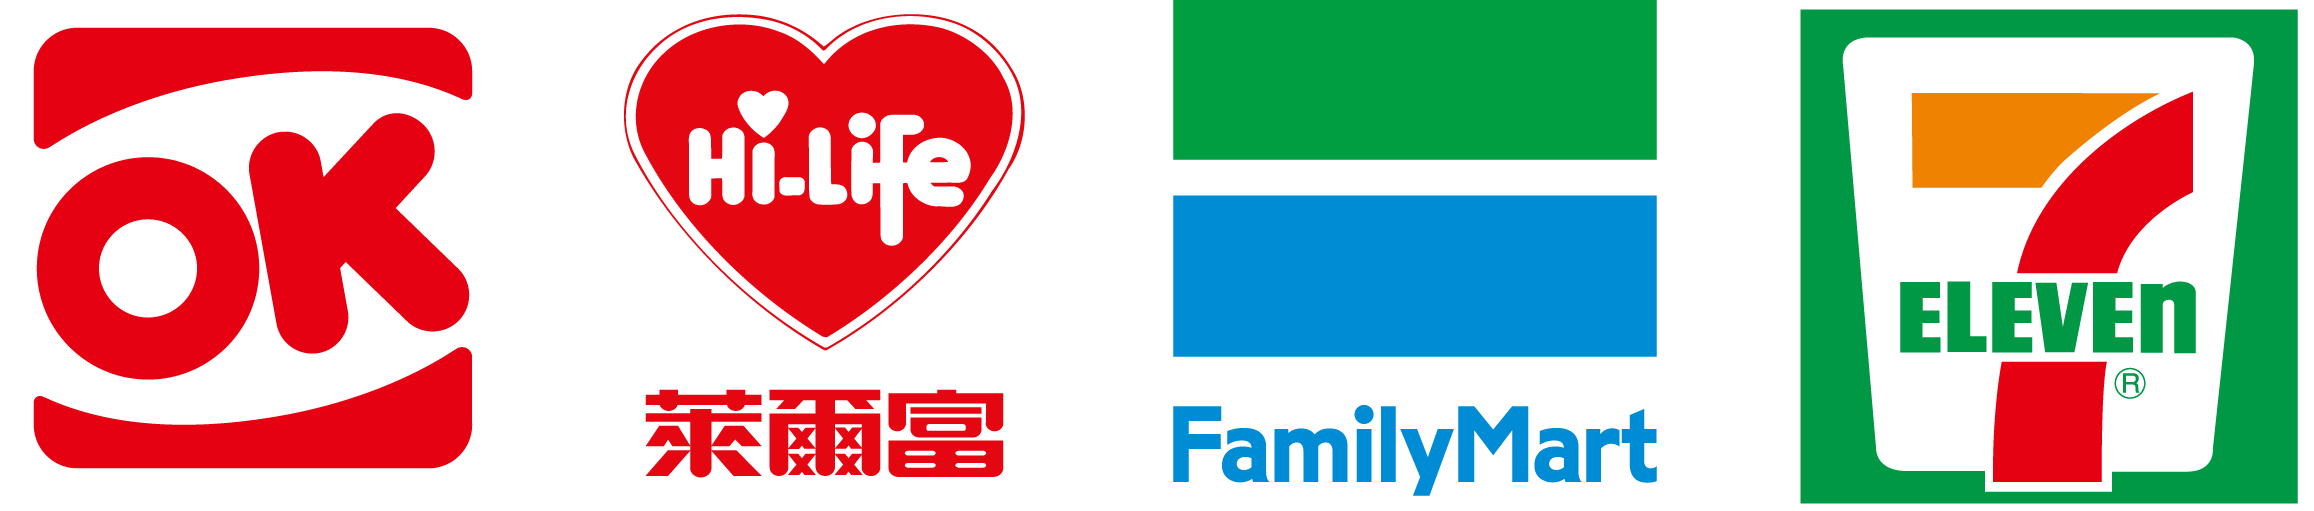 台湾のコンビニのロゴ